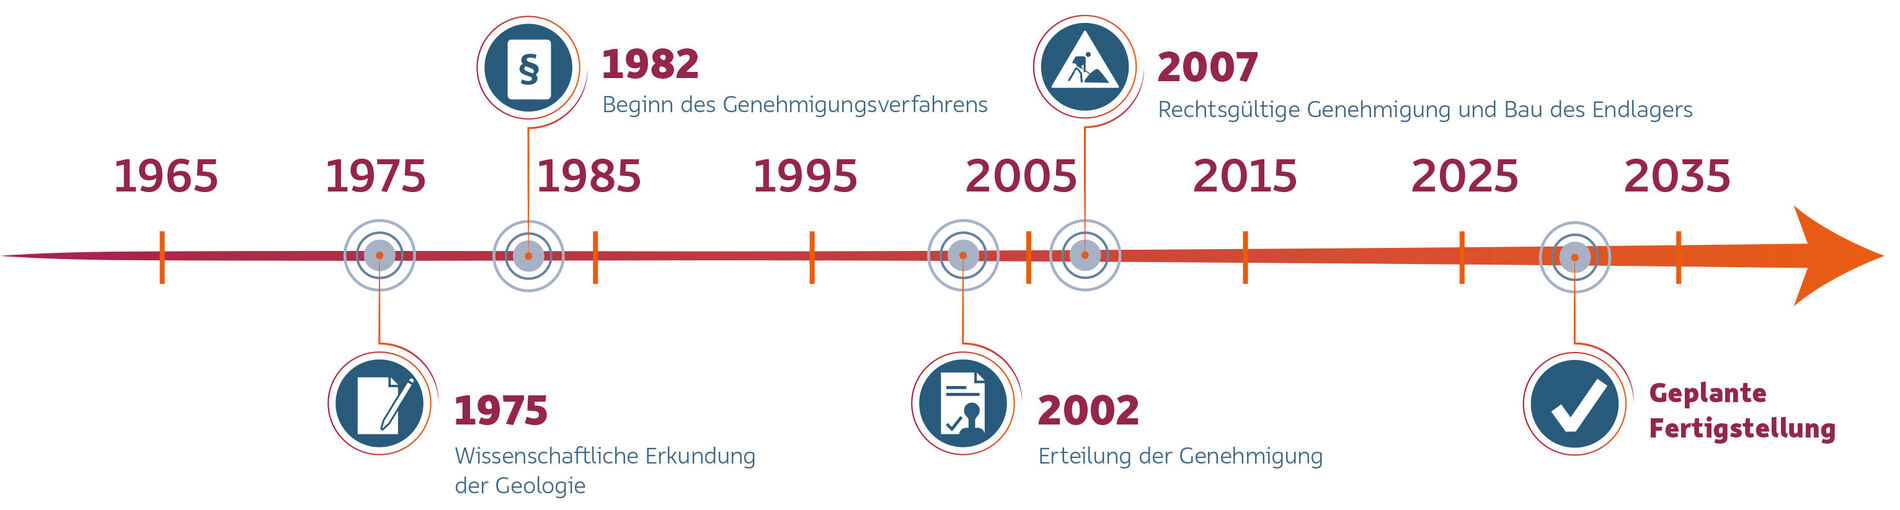 Grafische Darstellung einer Zeitleiste, die den zeitlichen Ablauf der Errichtung des Endlagers Konrad zeigt.